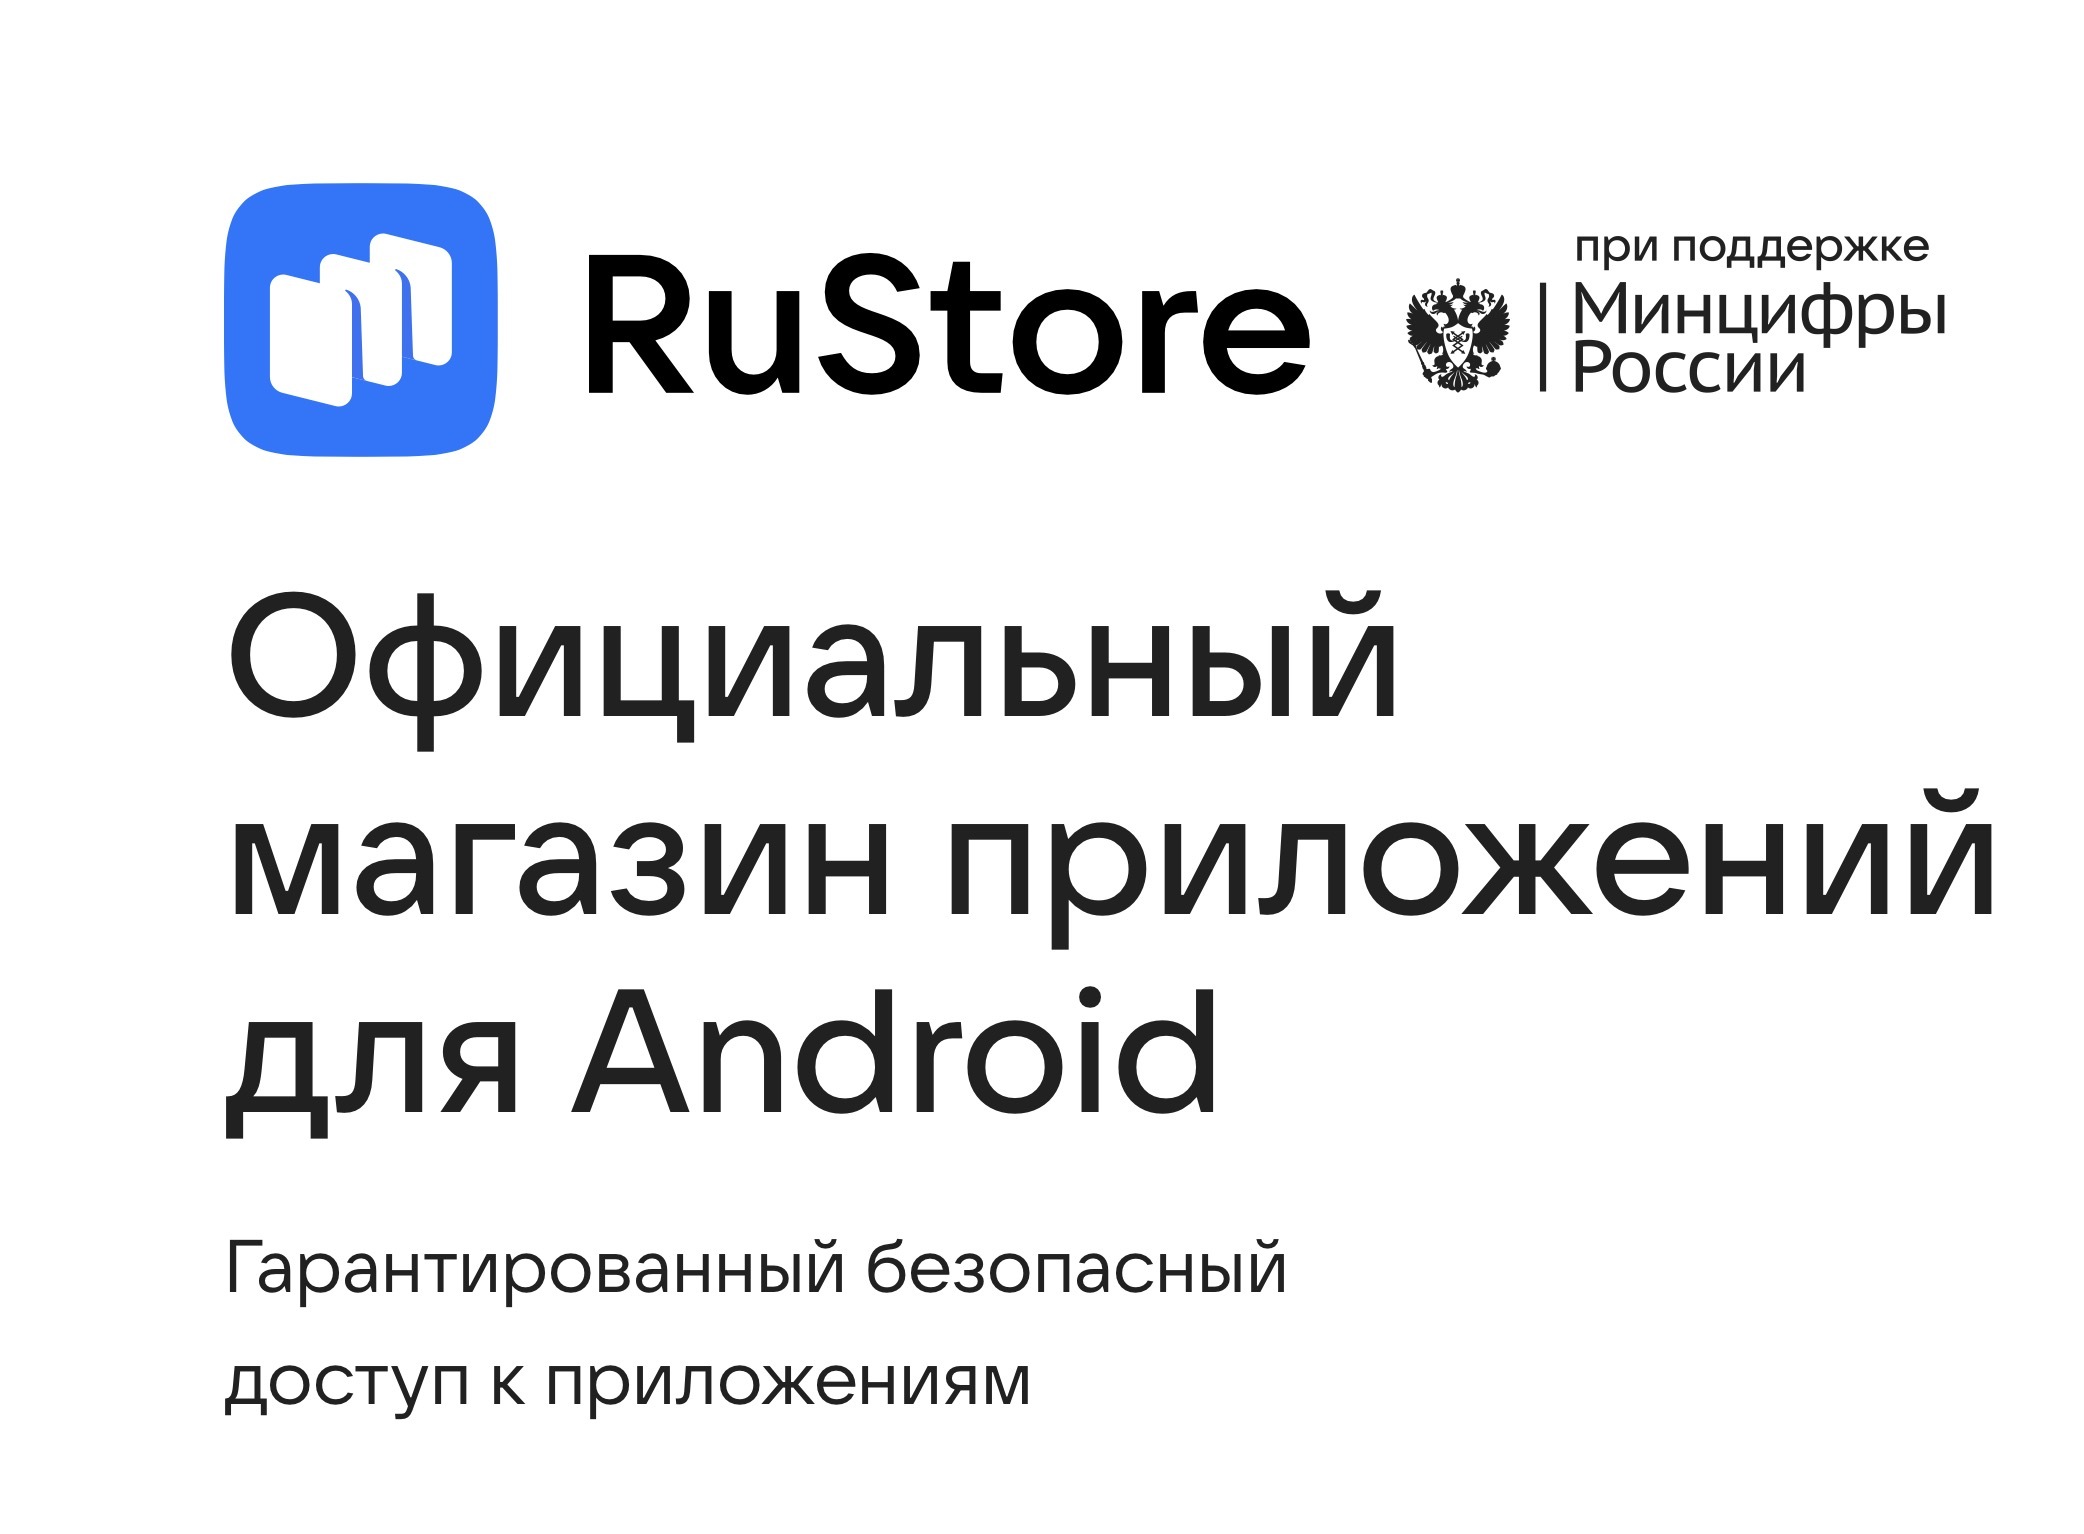 Магазин приложений RuStore снова оказался самым востребованным в России